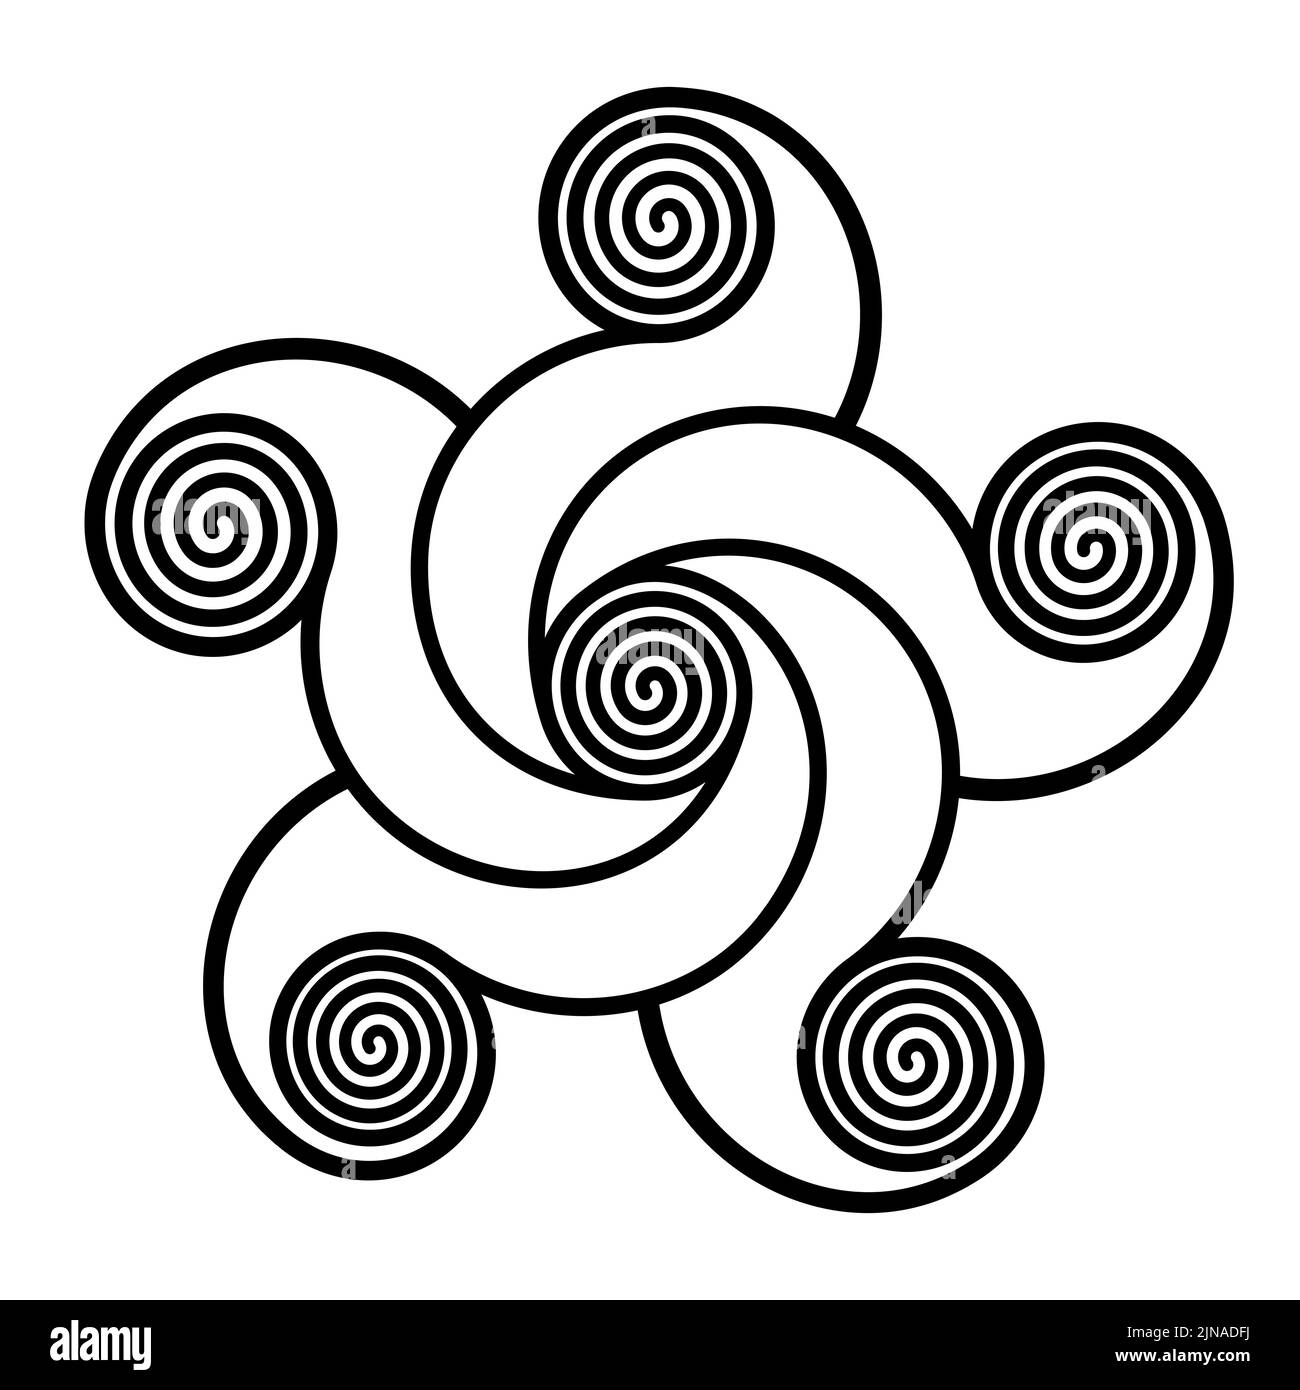 Spirali che formano una stella a forma di pentagramma. Stella a cinque punte, fatta di spirali, collegata con linee curve ad una spirale al centro. Foto Stock